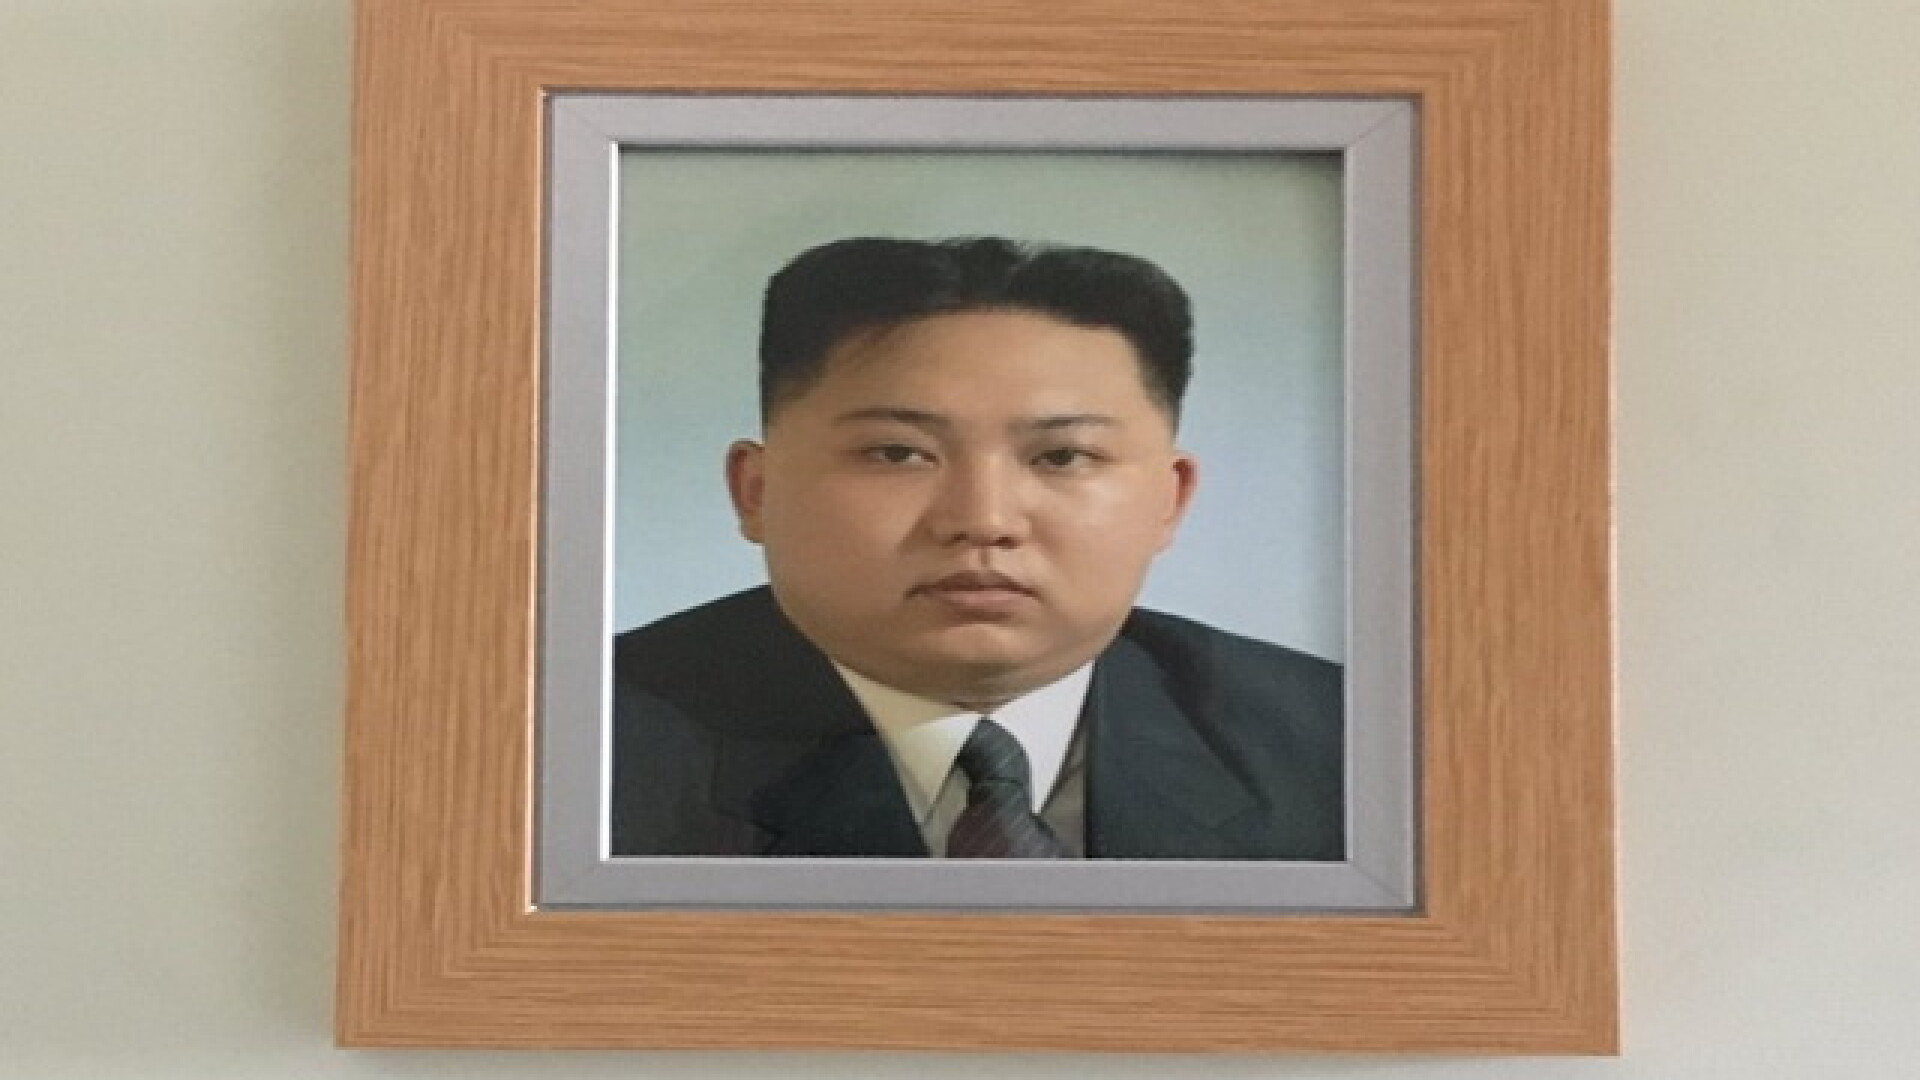 Cum a ajuns fotografia lui Kim-Jong-un in casa unui britanic